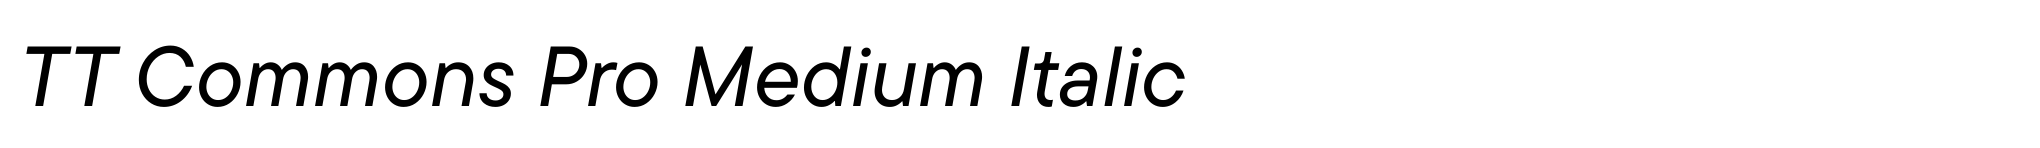 TT Commons Pro Medium Italic image